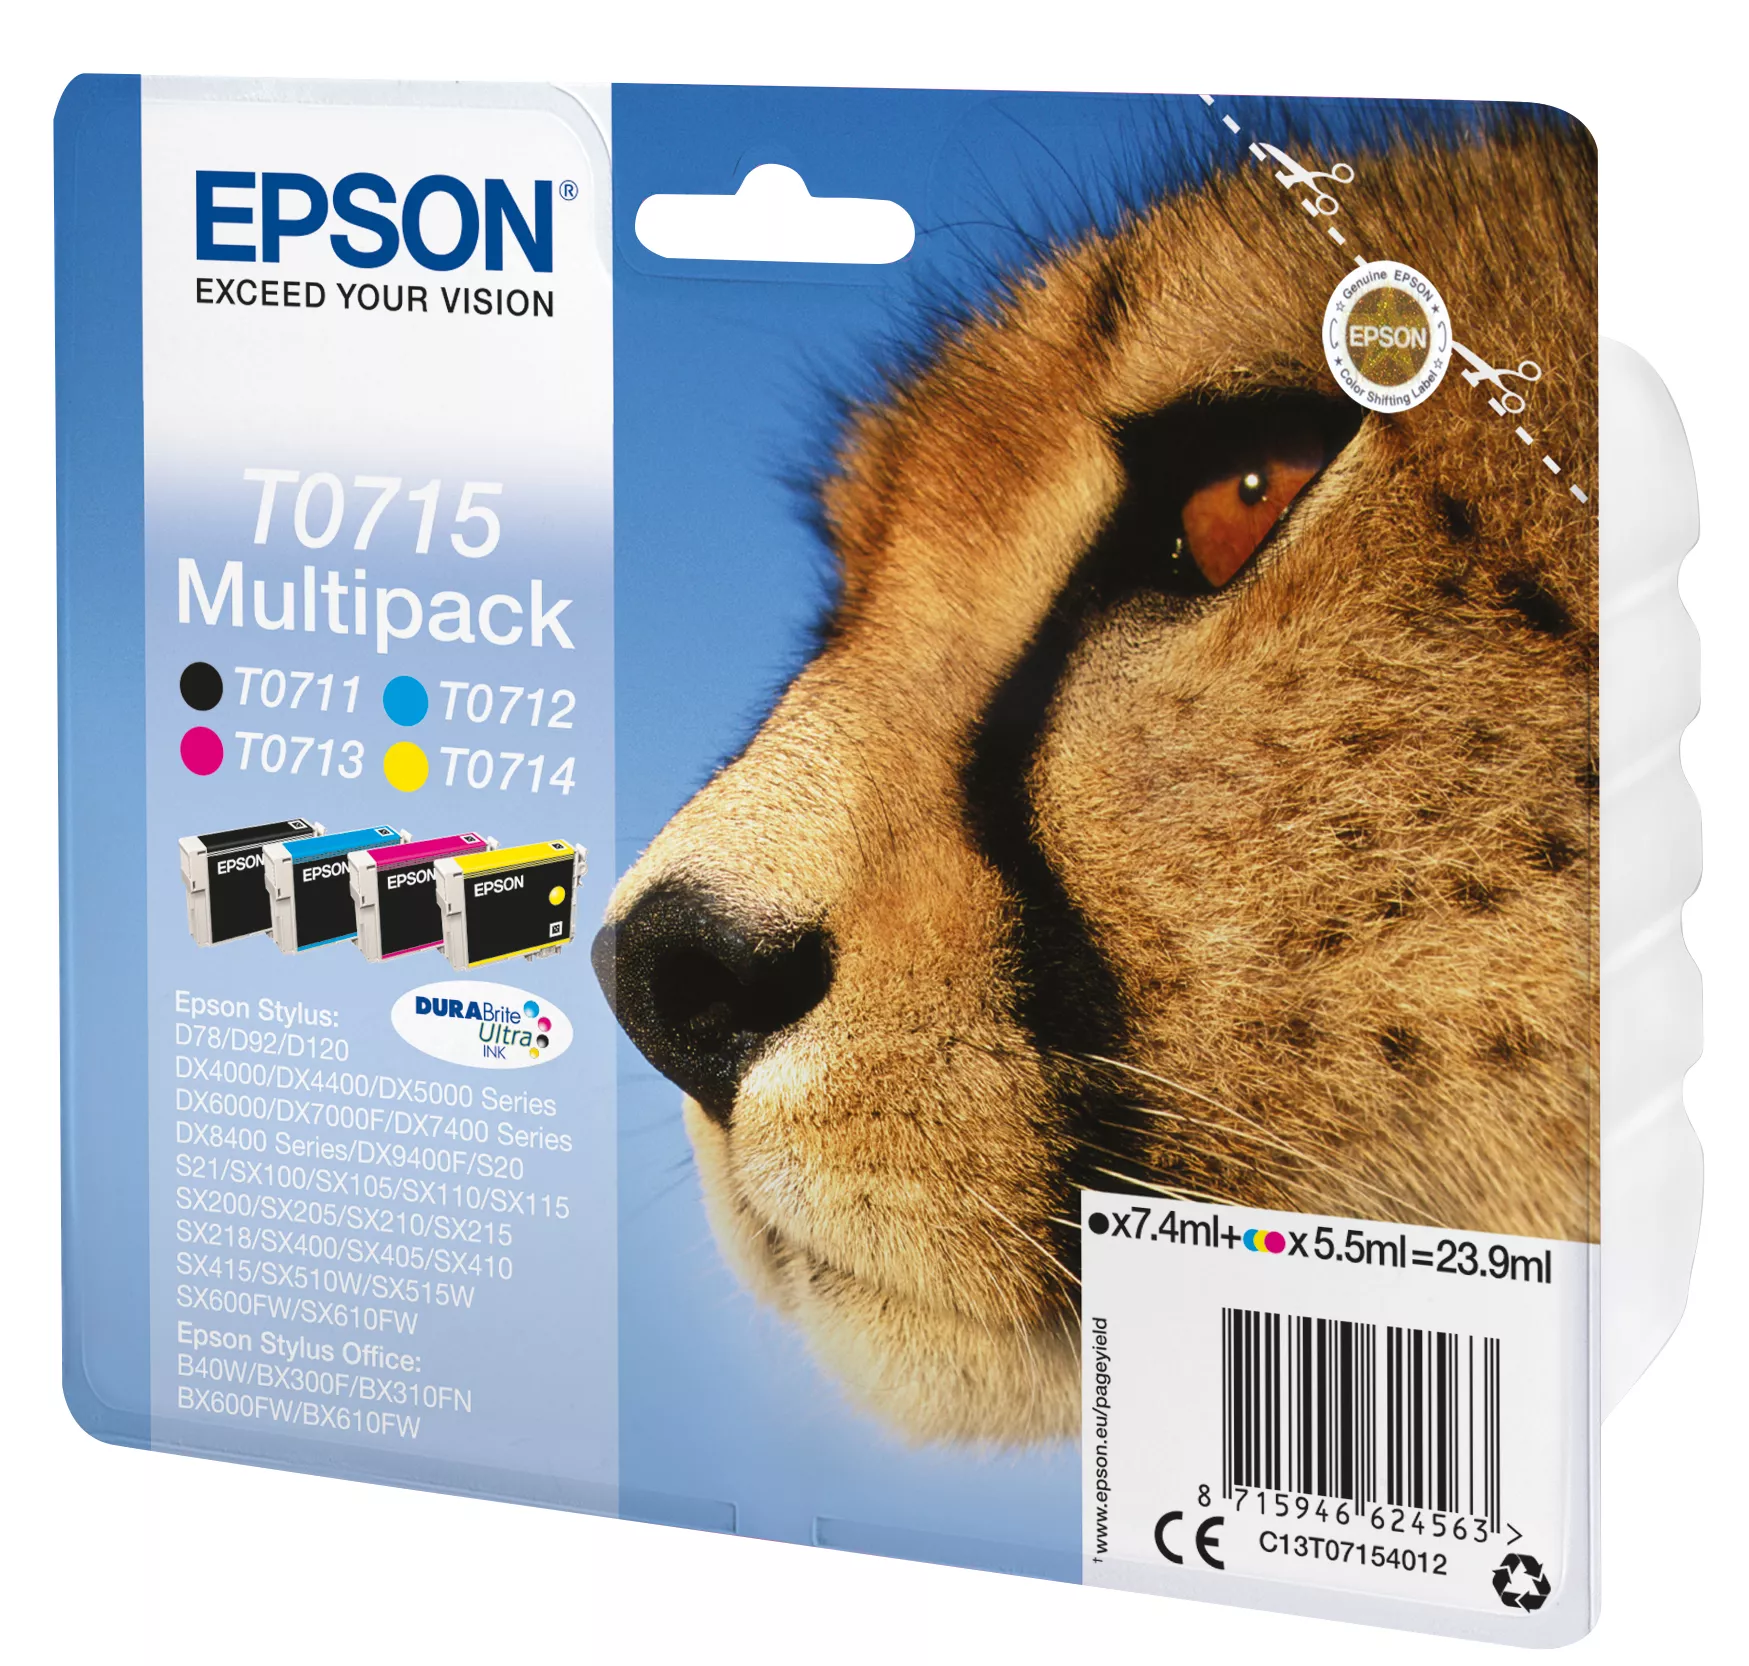 Vente EPSON T0715 cartouche d encre noir et tricolore Epson au meilleur prix - visuel 2